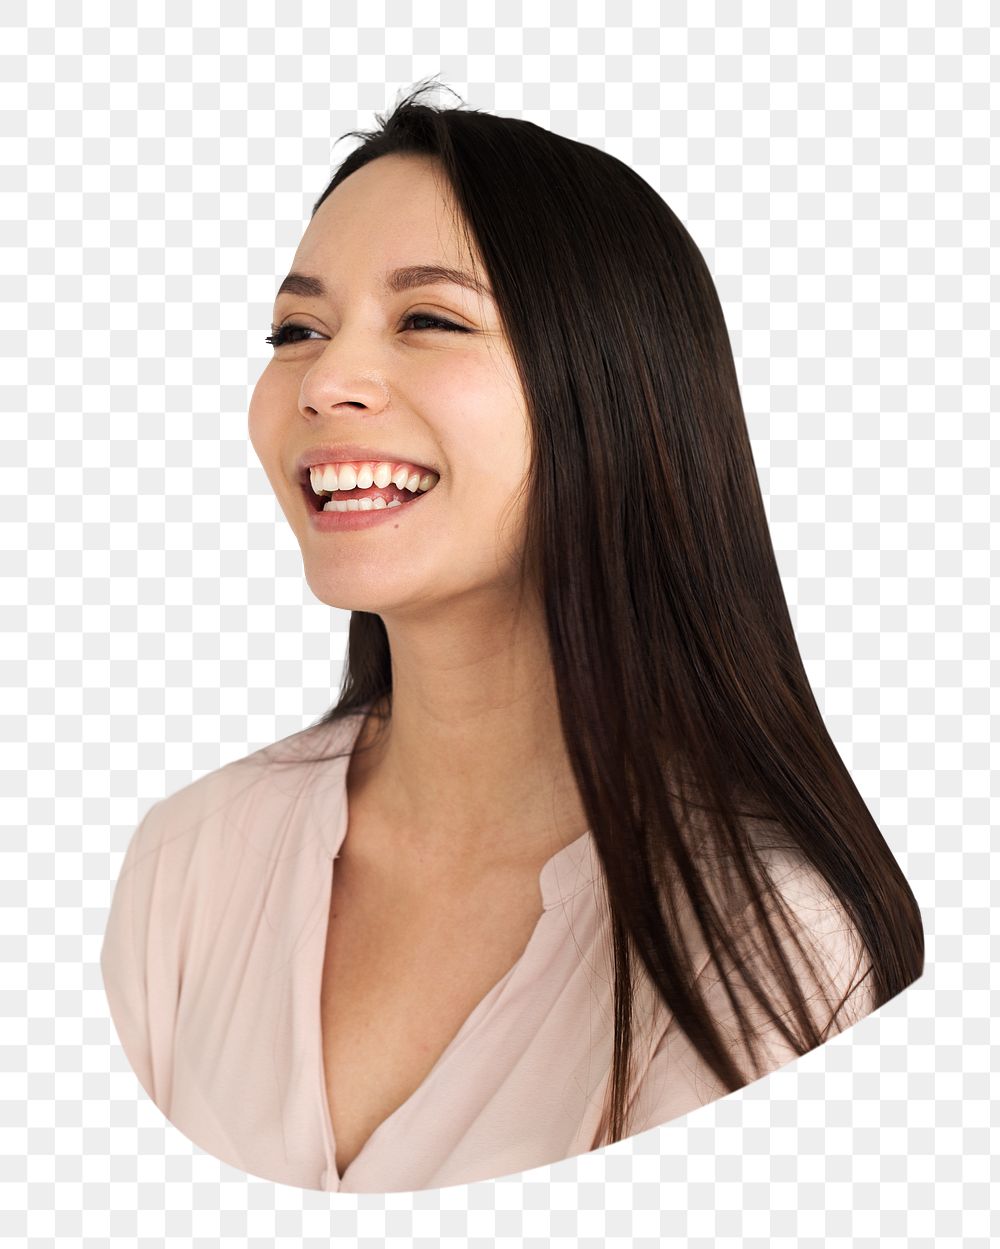 Woman smiling png portrait sticker, transparent background